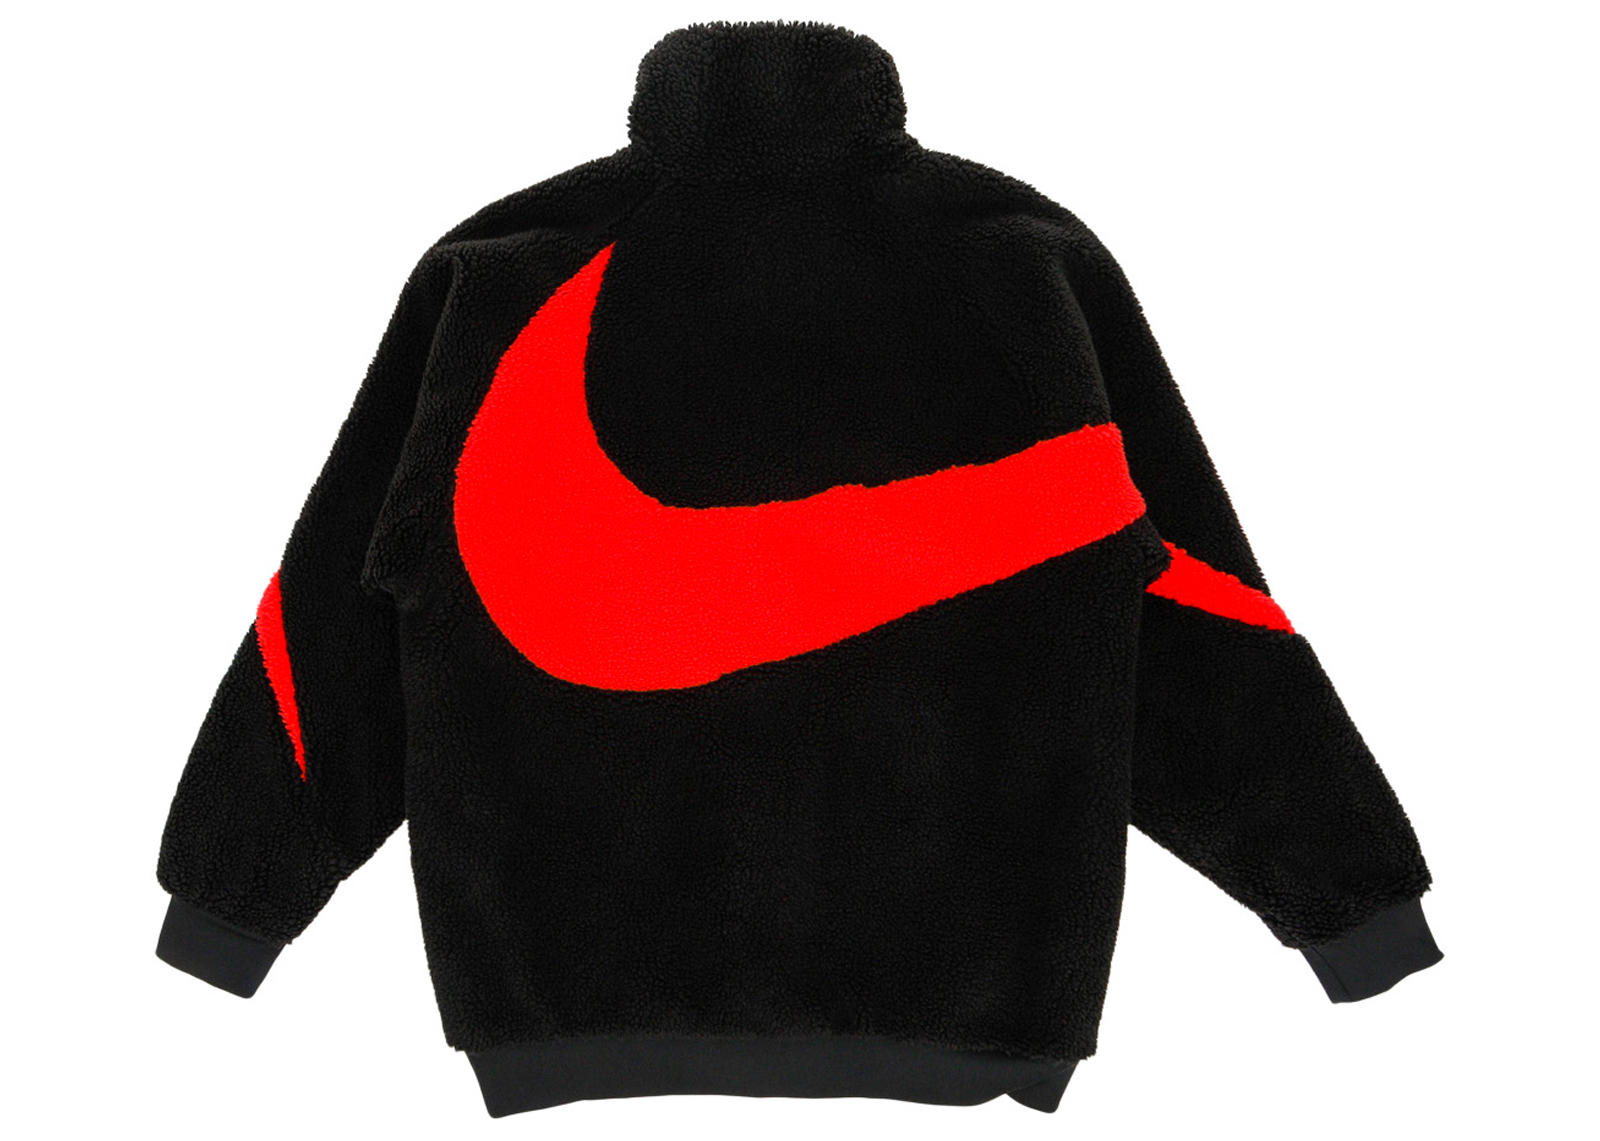 Nike Big Swoosh Reversible Boa Jacket (Asia Sizing) Black Chili Red Men's -  FW21 - US